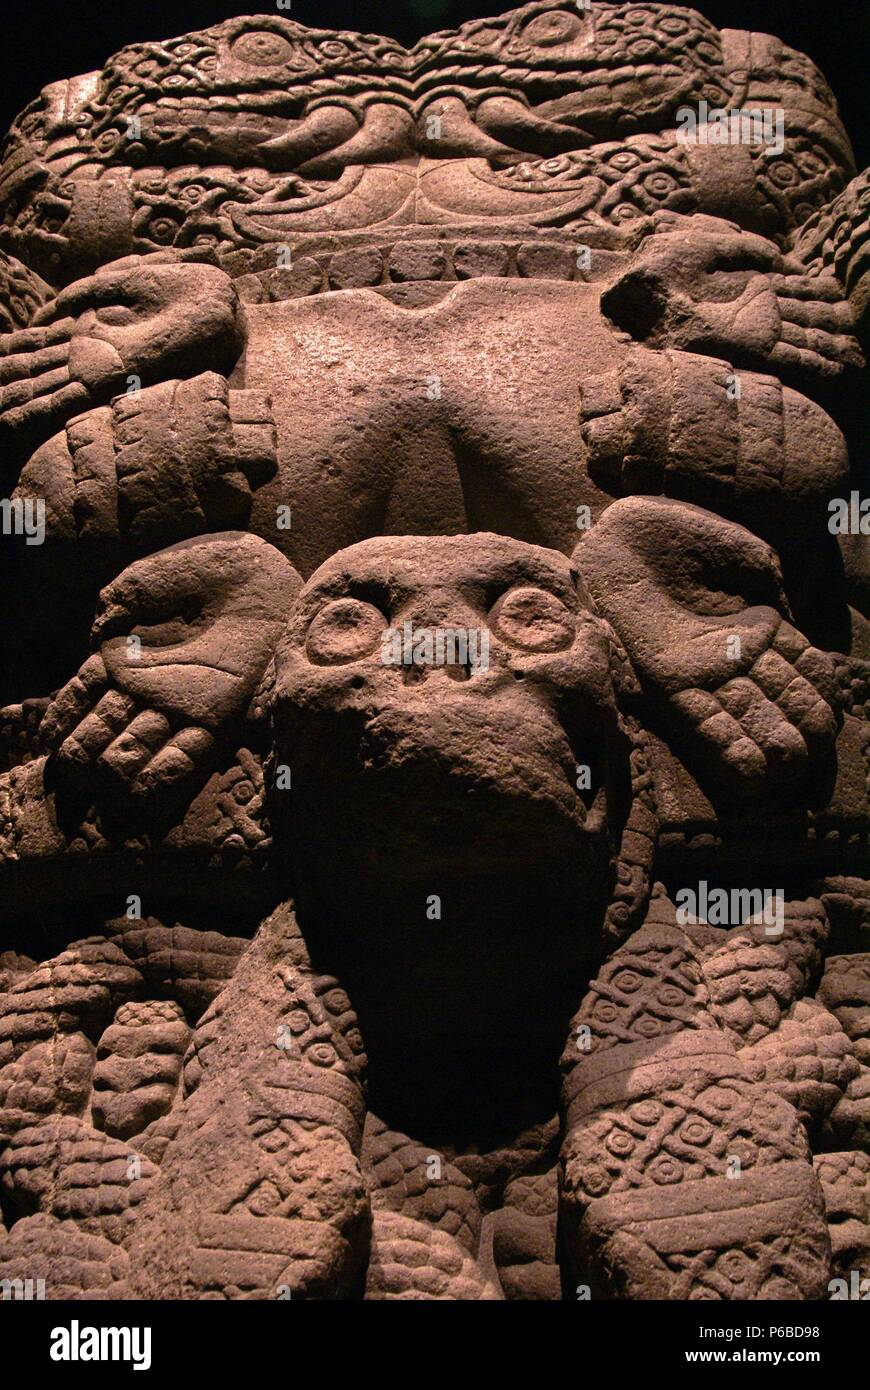 Estatua monumental de Coatlicue . Museo Nacional de antropologia. Estado de Mexico D.F. Mexico. Stock Photo